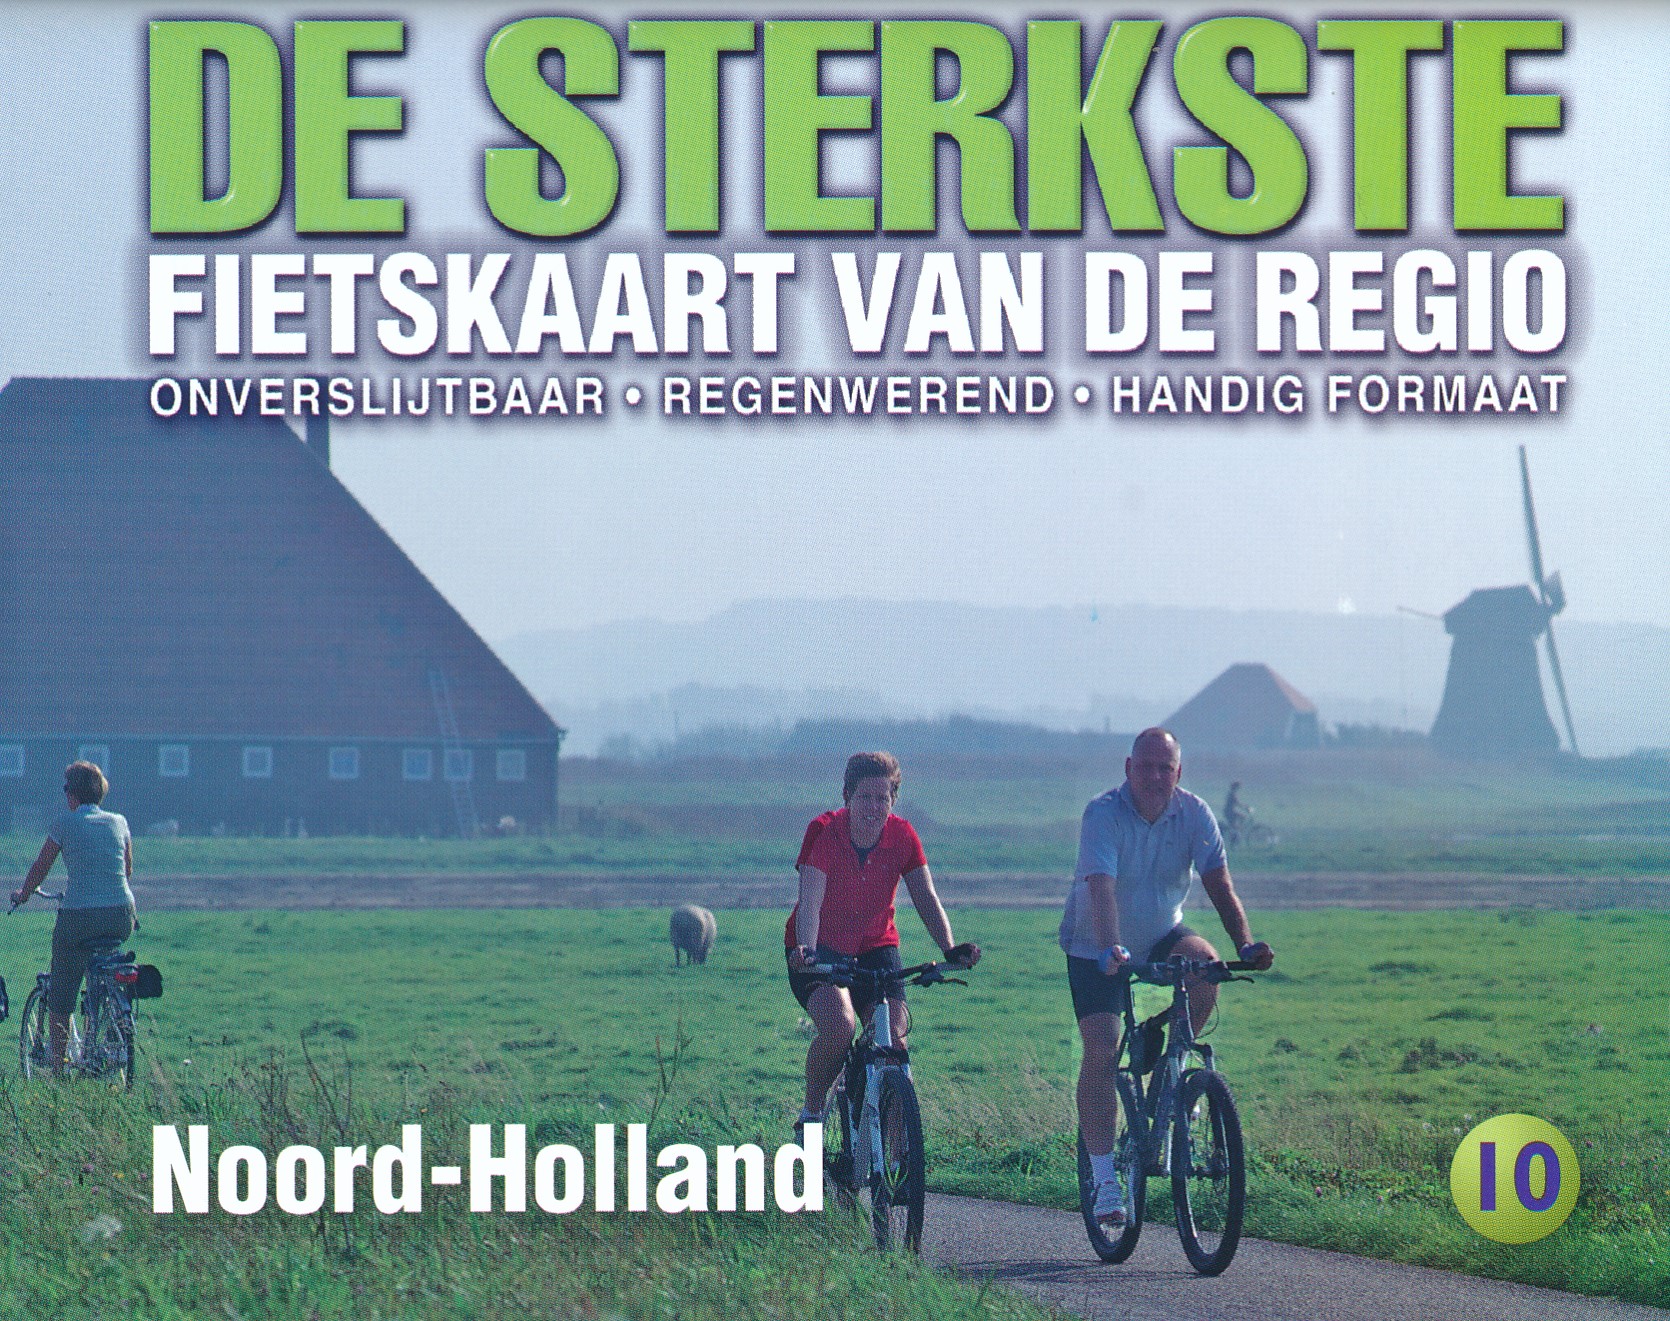 Online bestellen: Fietskaart 10 De sterkste fietskaart van de regio Noord-Holland | Buijten & Schipperheijn